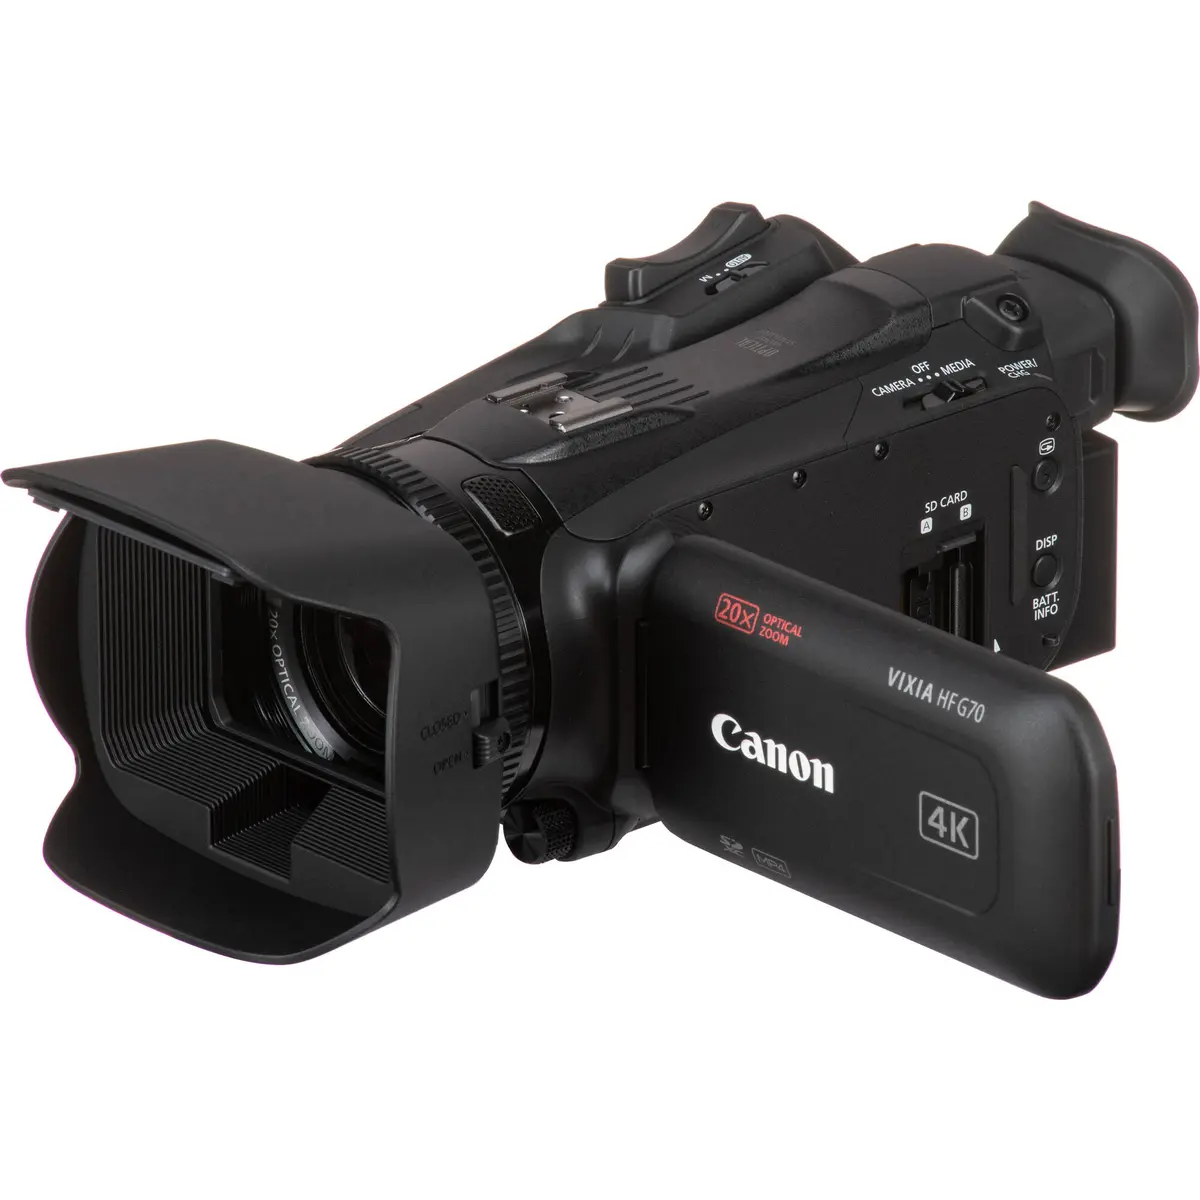 1. Canon LEGRIA HF G70 Camcorder